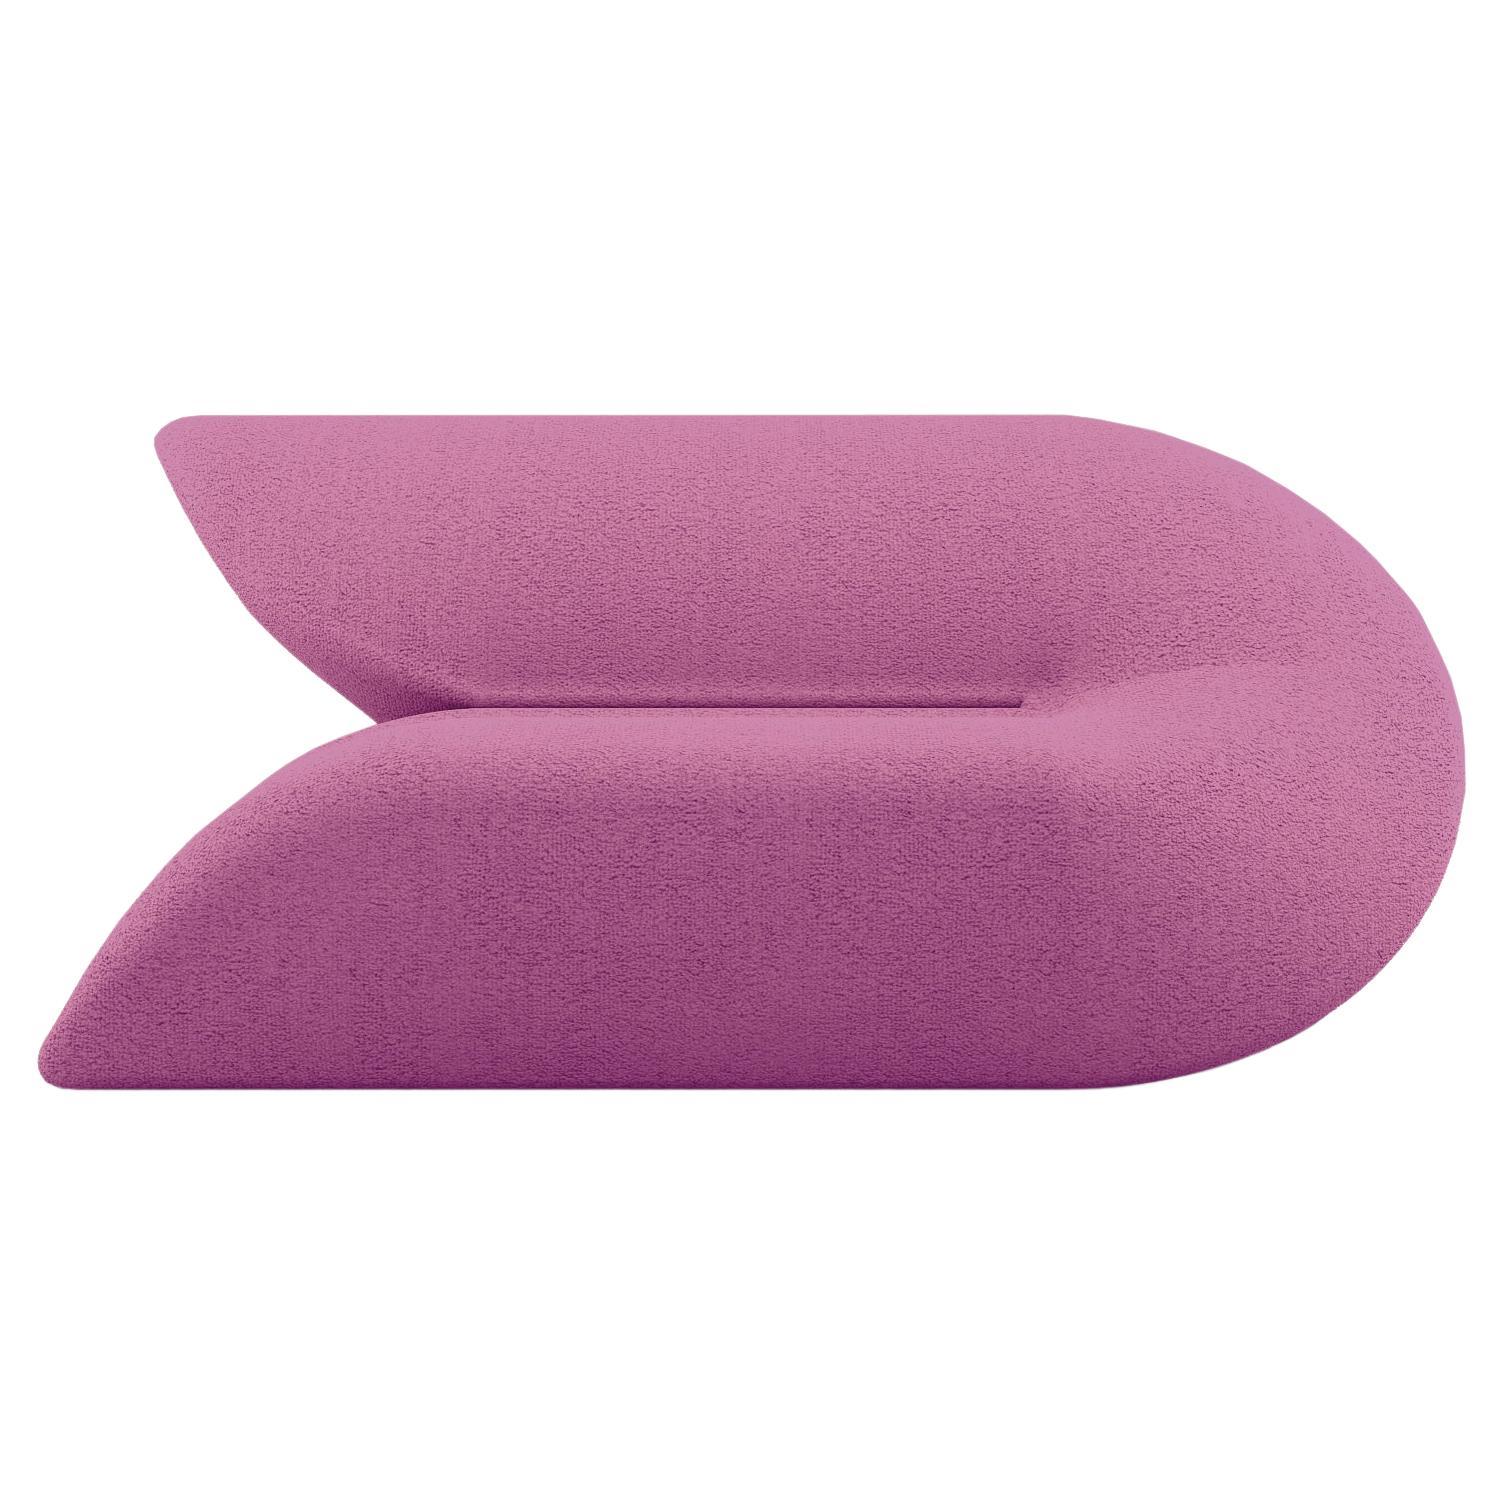 Delta Sofa - Modernes Violettes gepolstertes zweisitziges Sofa mit zwei Sitzen